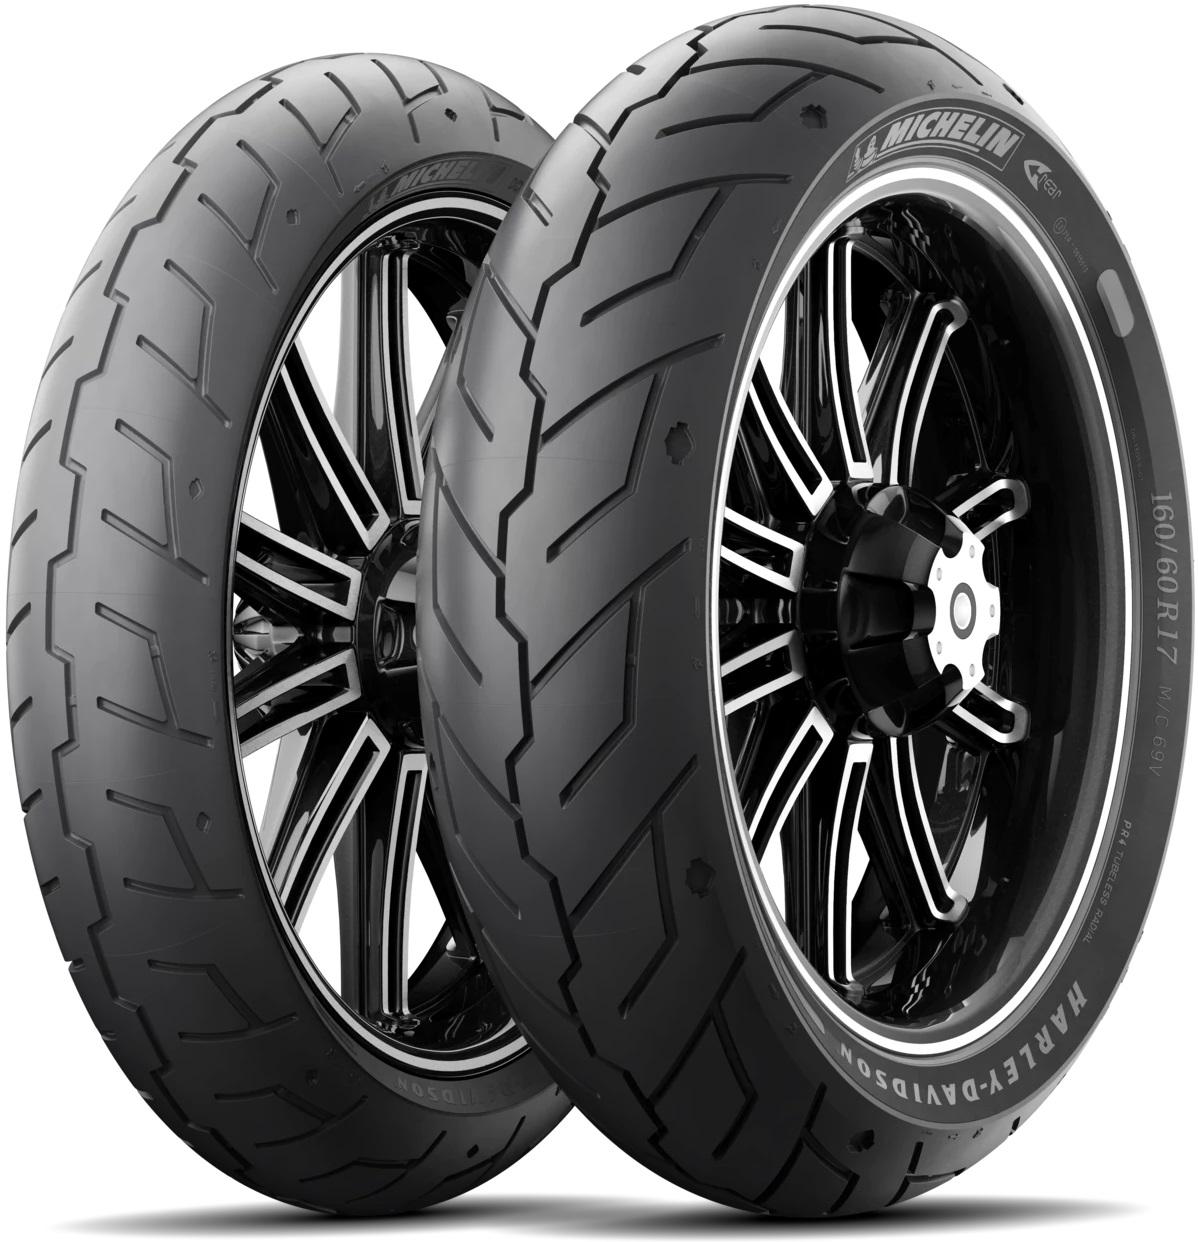 Michelin Scorcher 21 Tyres